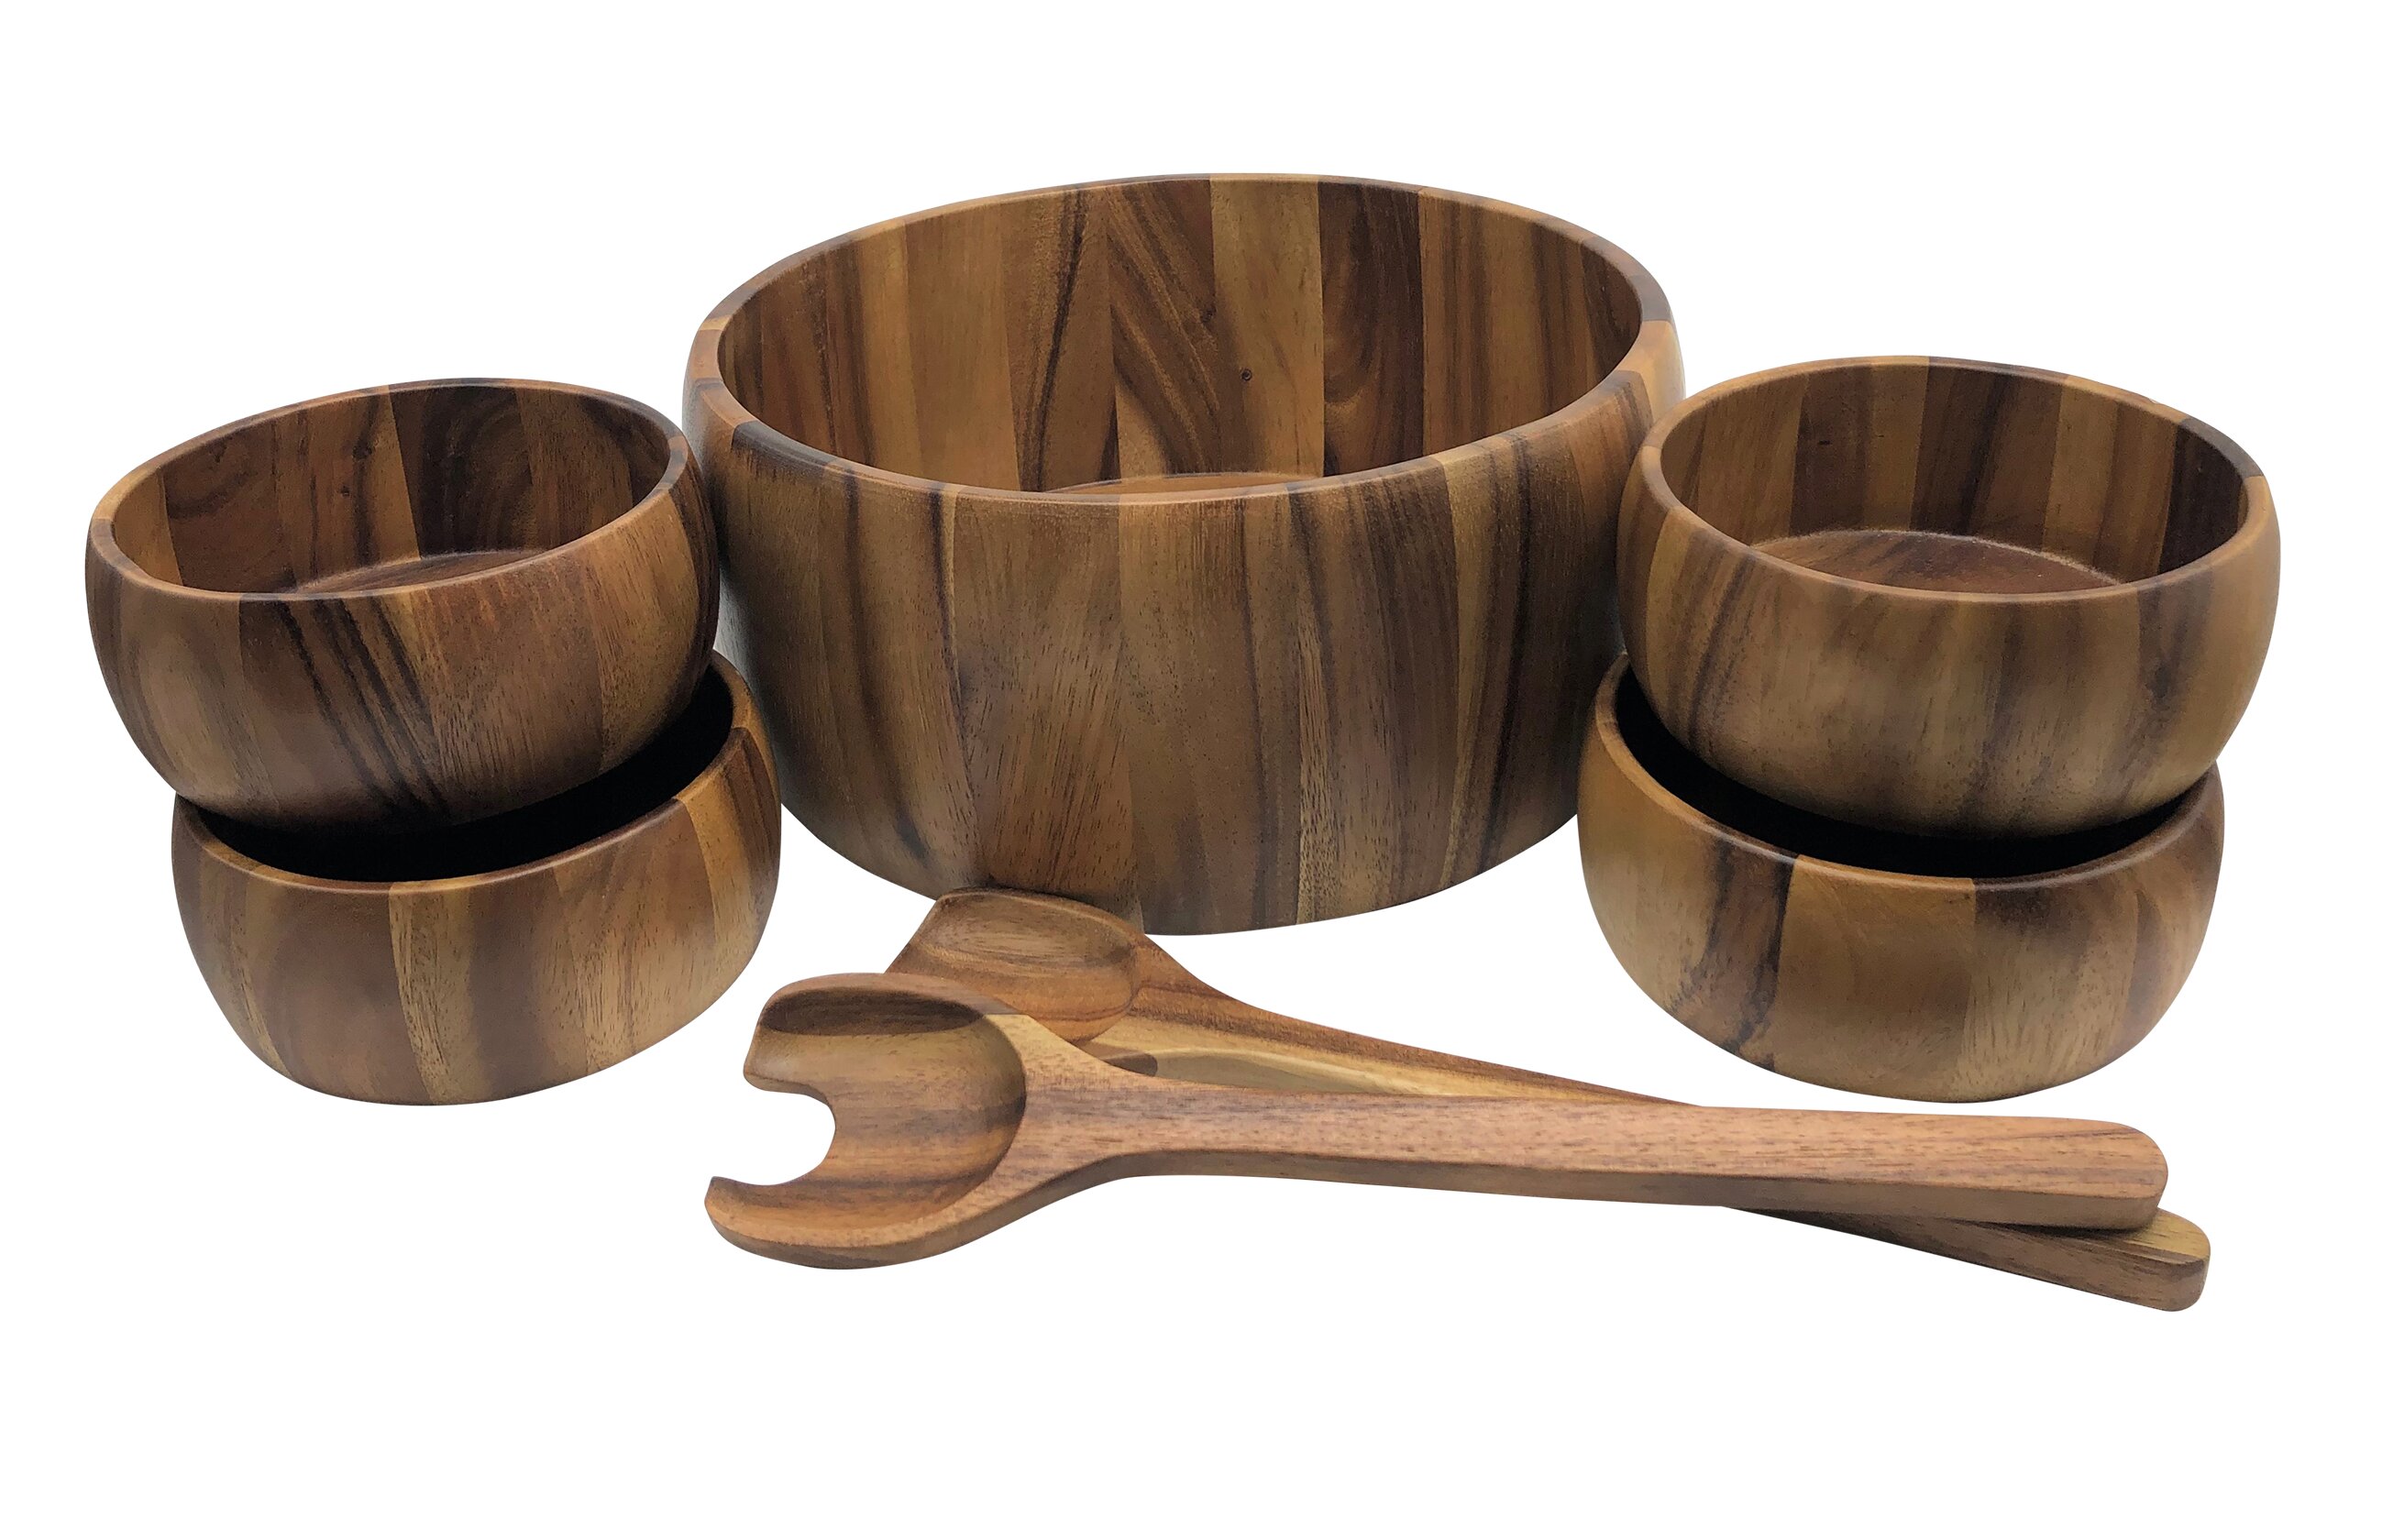 wooden salad bowls target